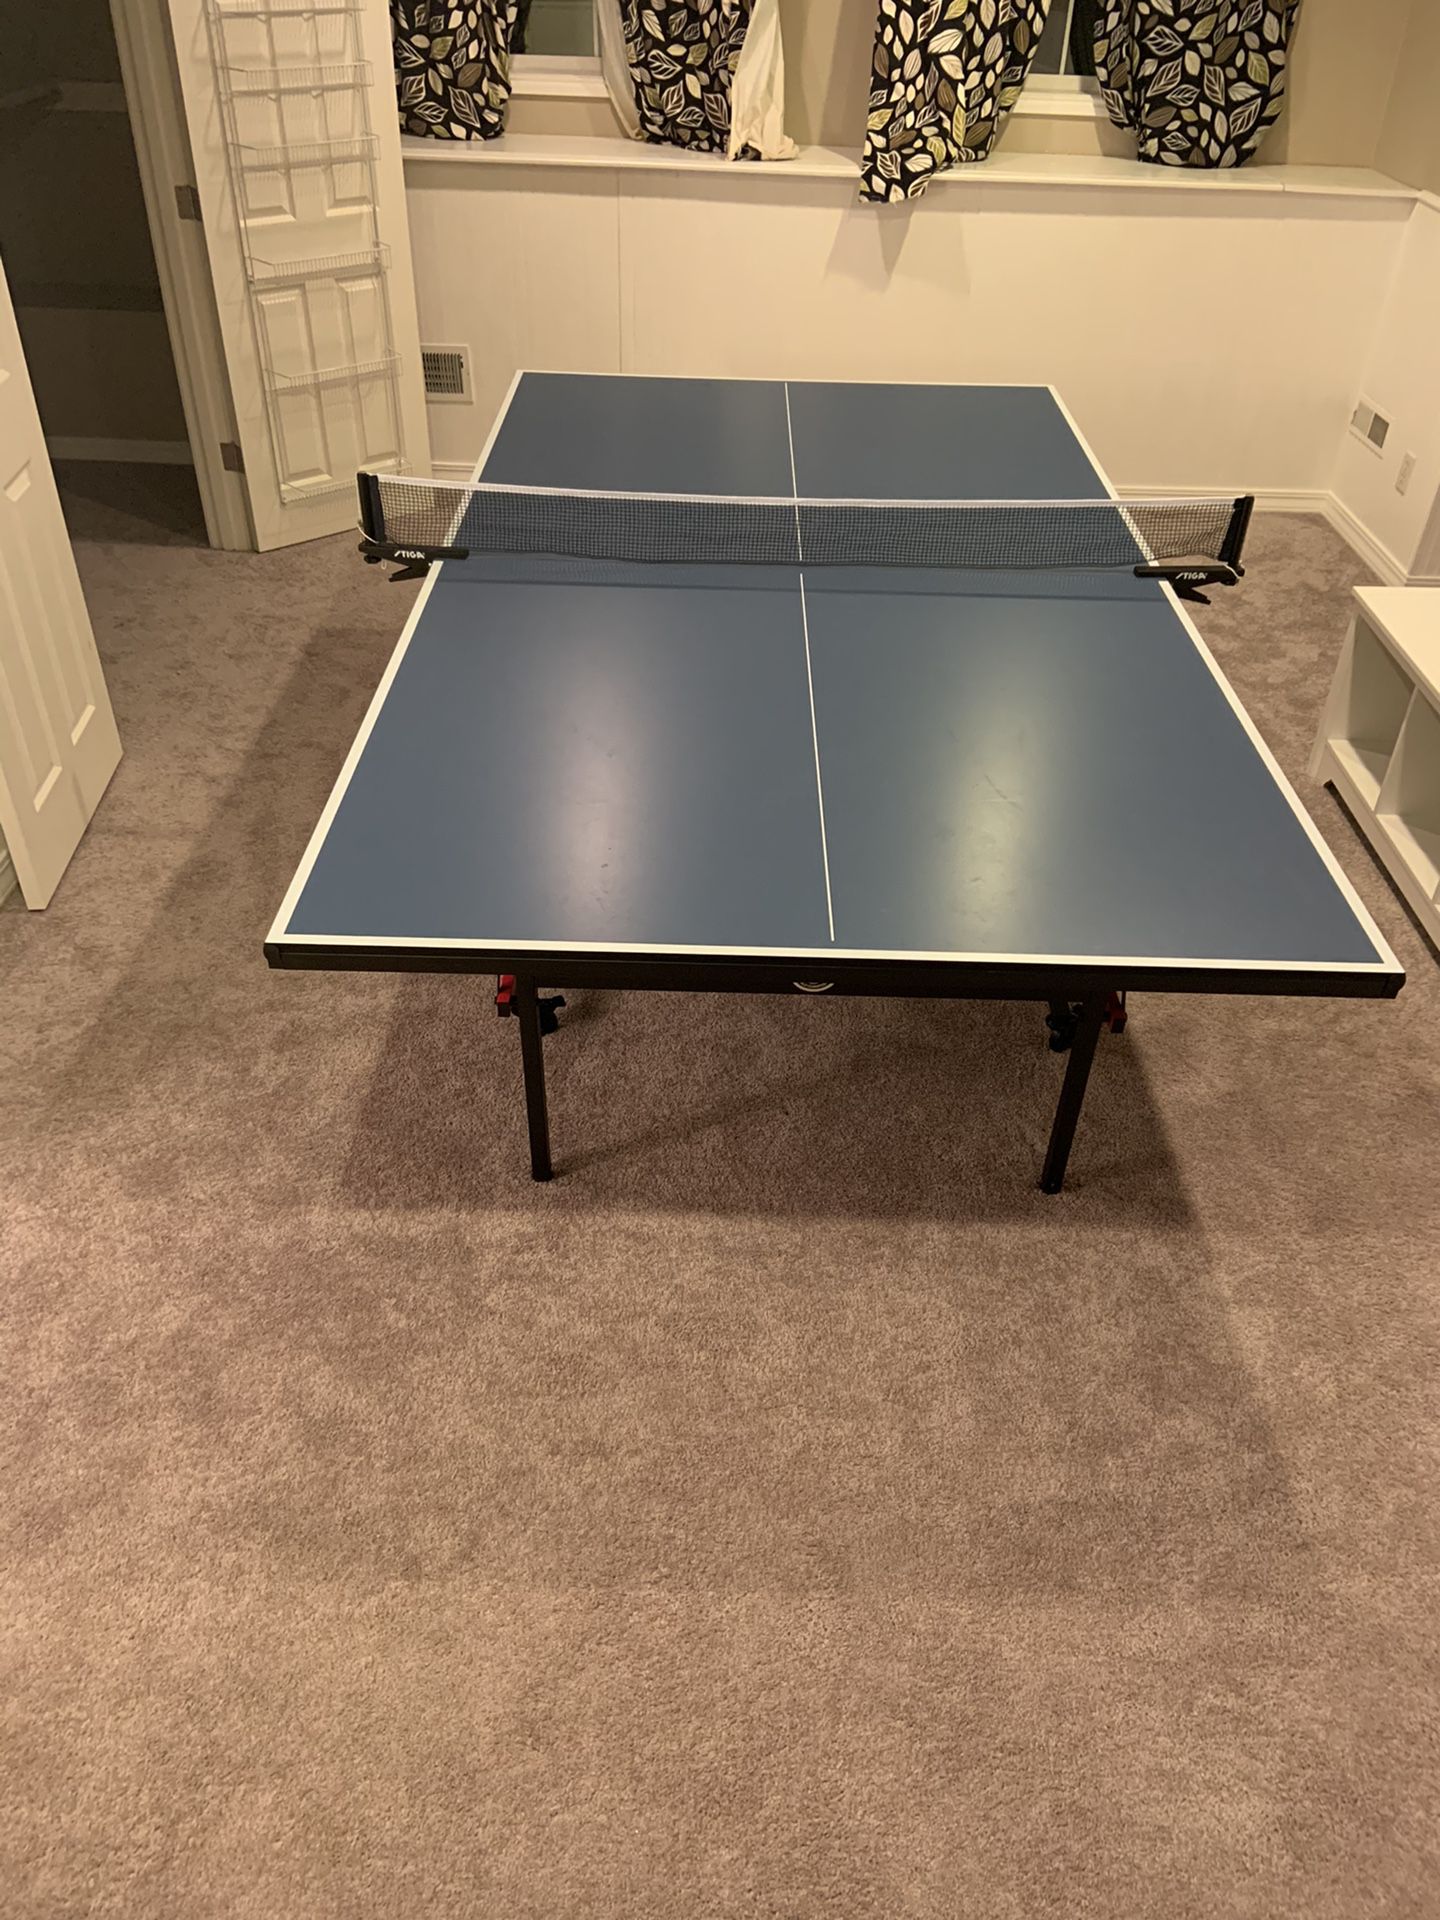 Stiga Advantage Ping Pong Table